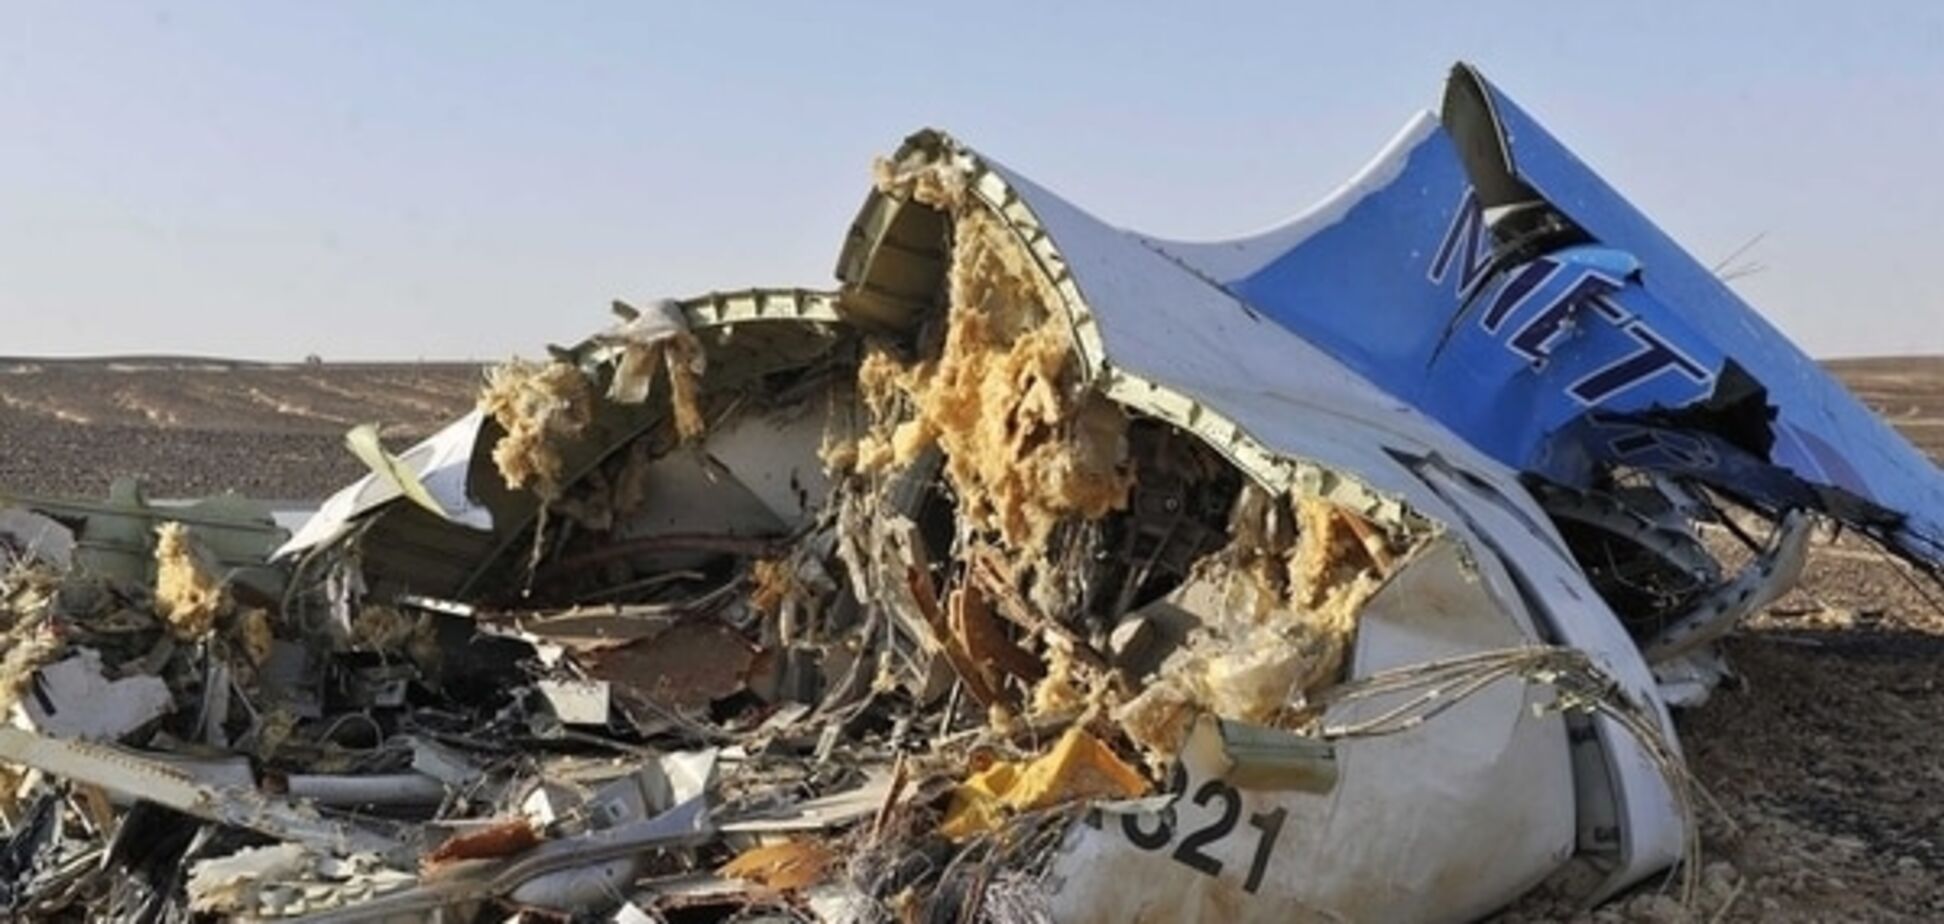 Бомбу пронесли сотрудники аэропорта: СМИ рассказали подробности теракта на A321